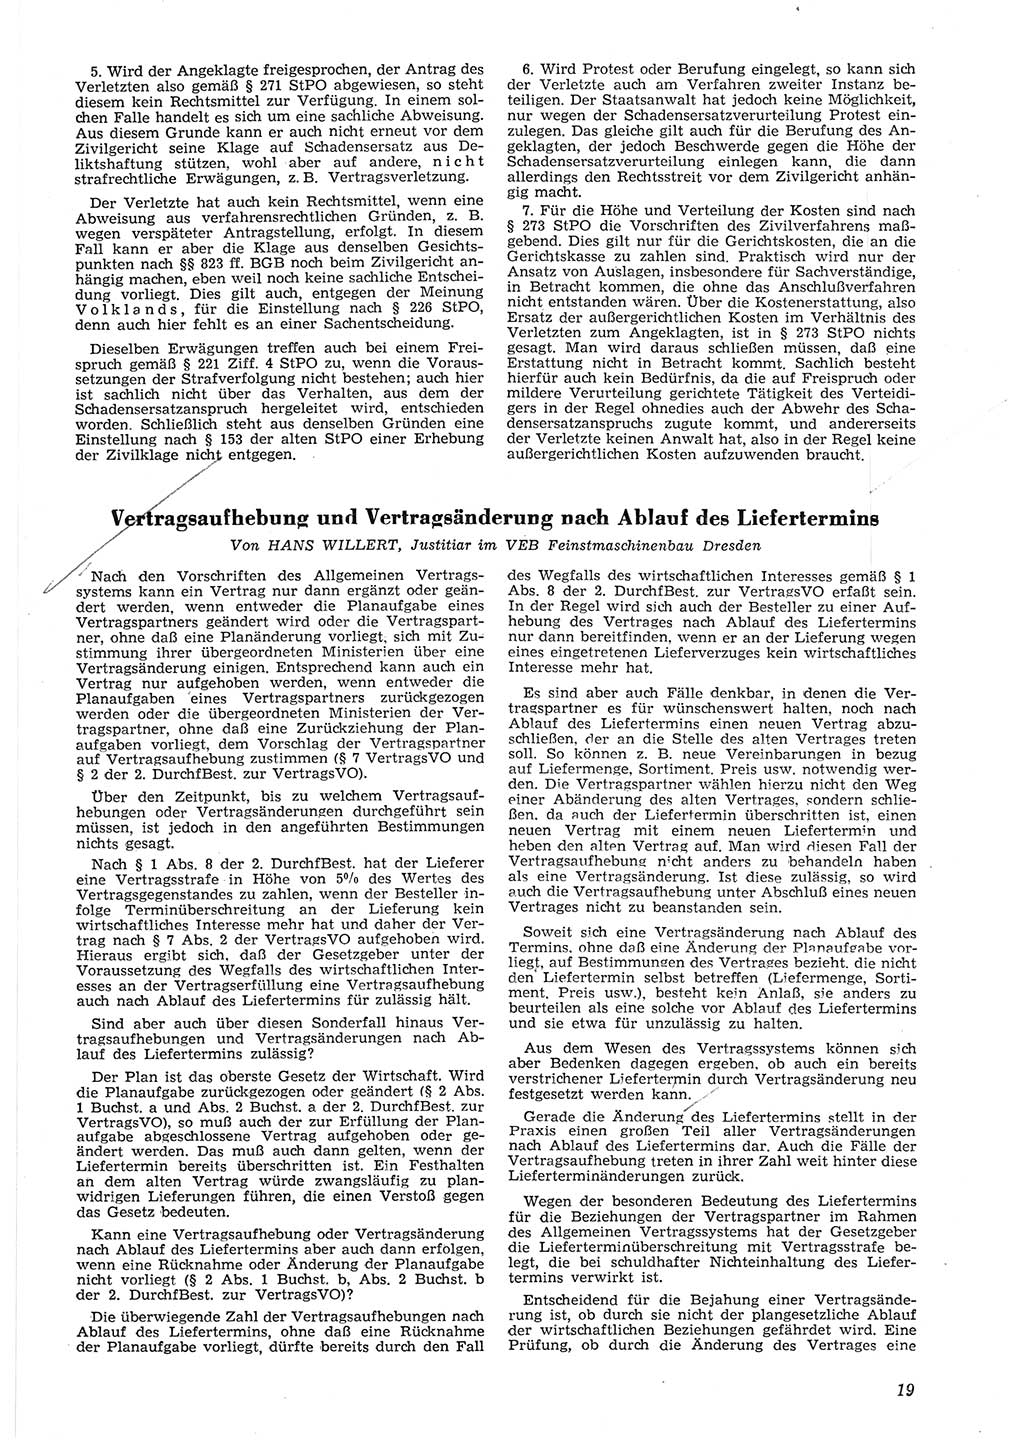 Neue Justiz (NJ), Zeitschrift für Recht und Rechtswissenschaft [Deutsche Demokratische Republik (DDR)], 8. Jahrgang 1954, Seite 19 (NJ DDR 1954, S. 19)